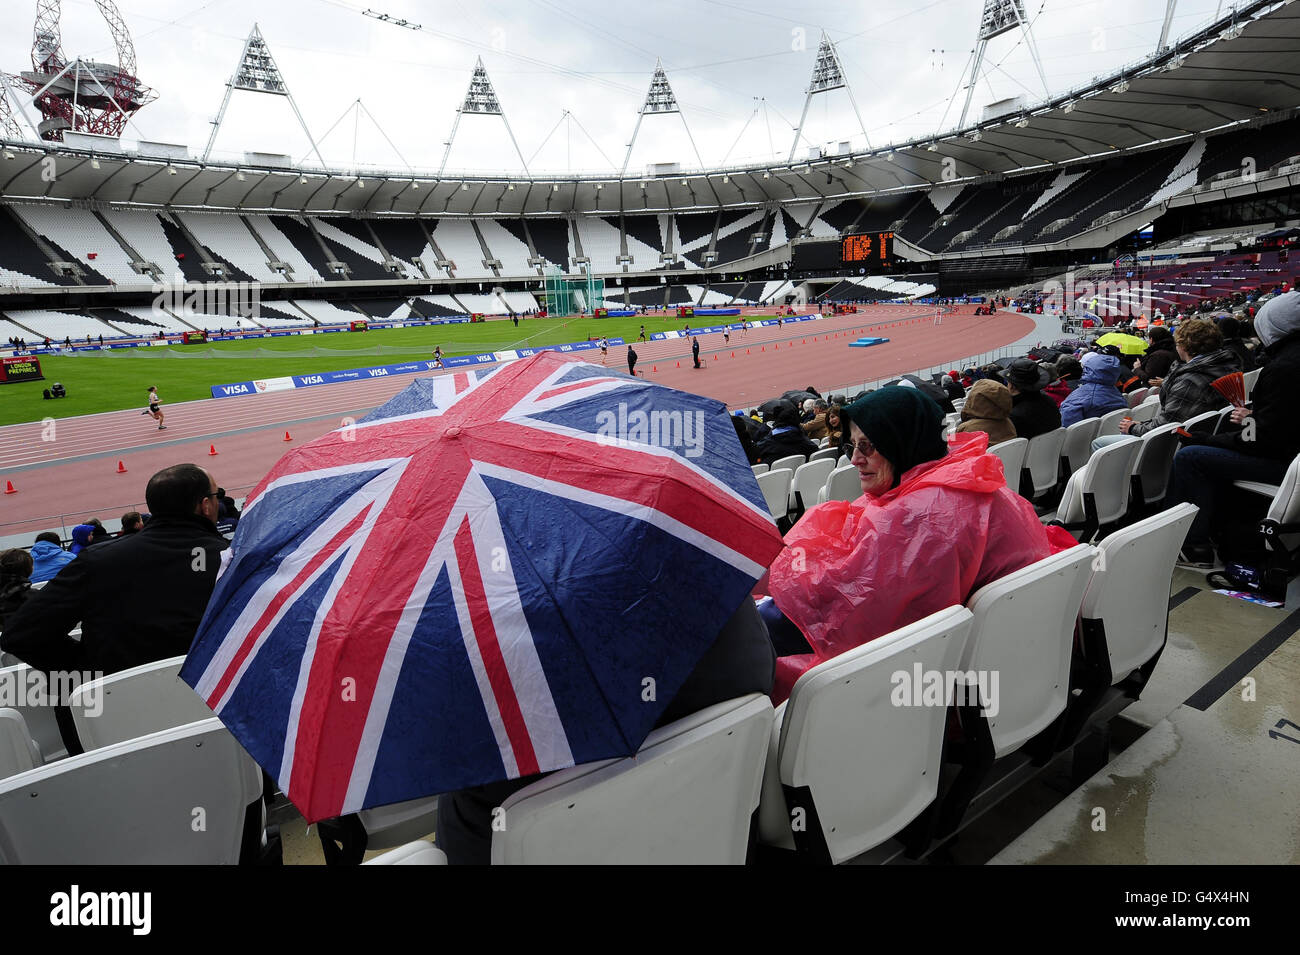 Les fans se réfugient à l'abri de la pluie lors des championnats sportifs des universités et collèges du stade olympique de Londres. Banque D'Images